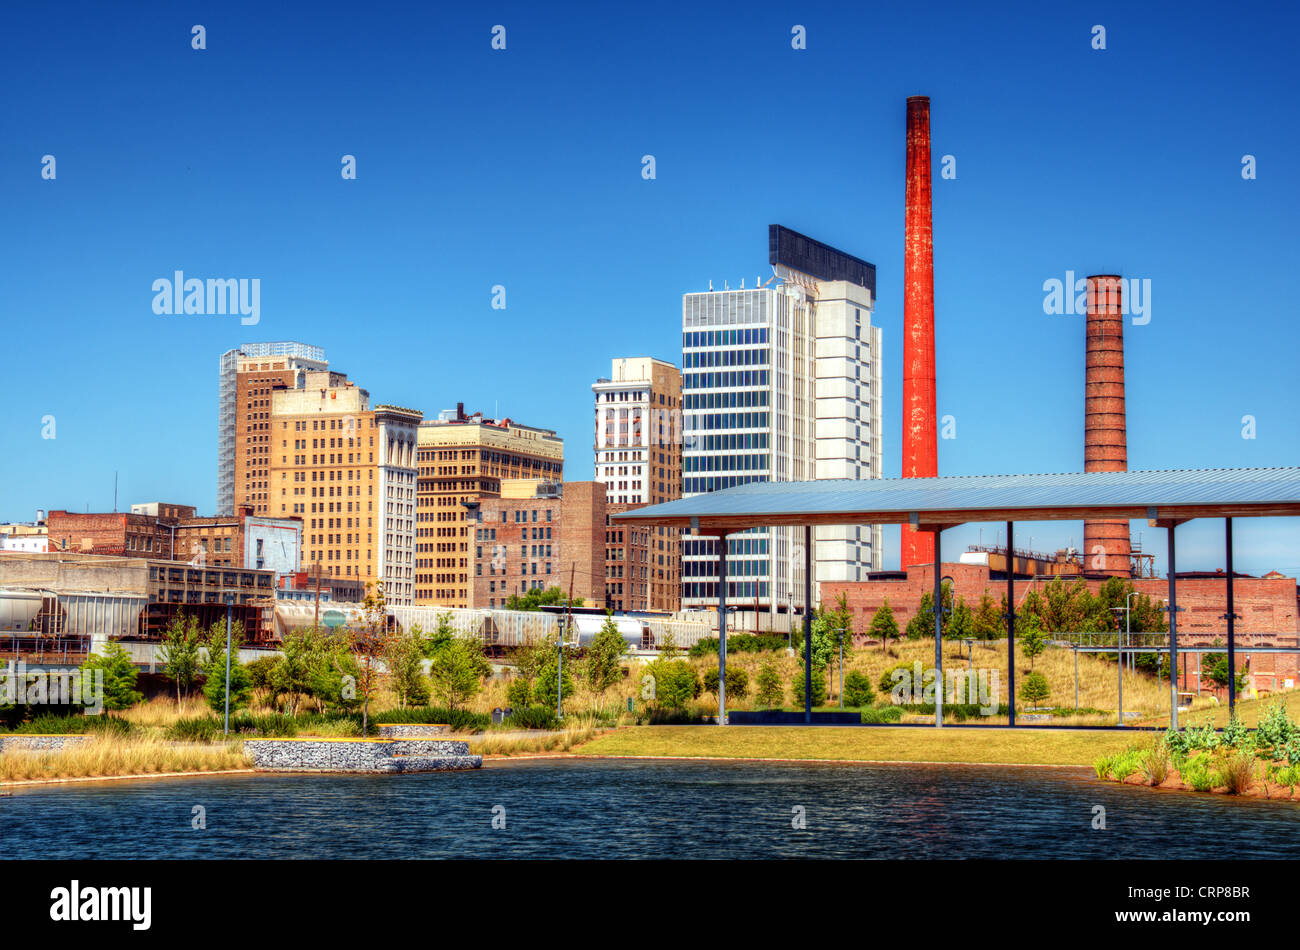 Skyline of downtown Birmingham, Alabama, USA. Stock Photo